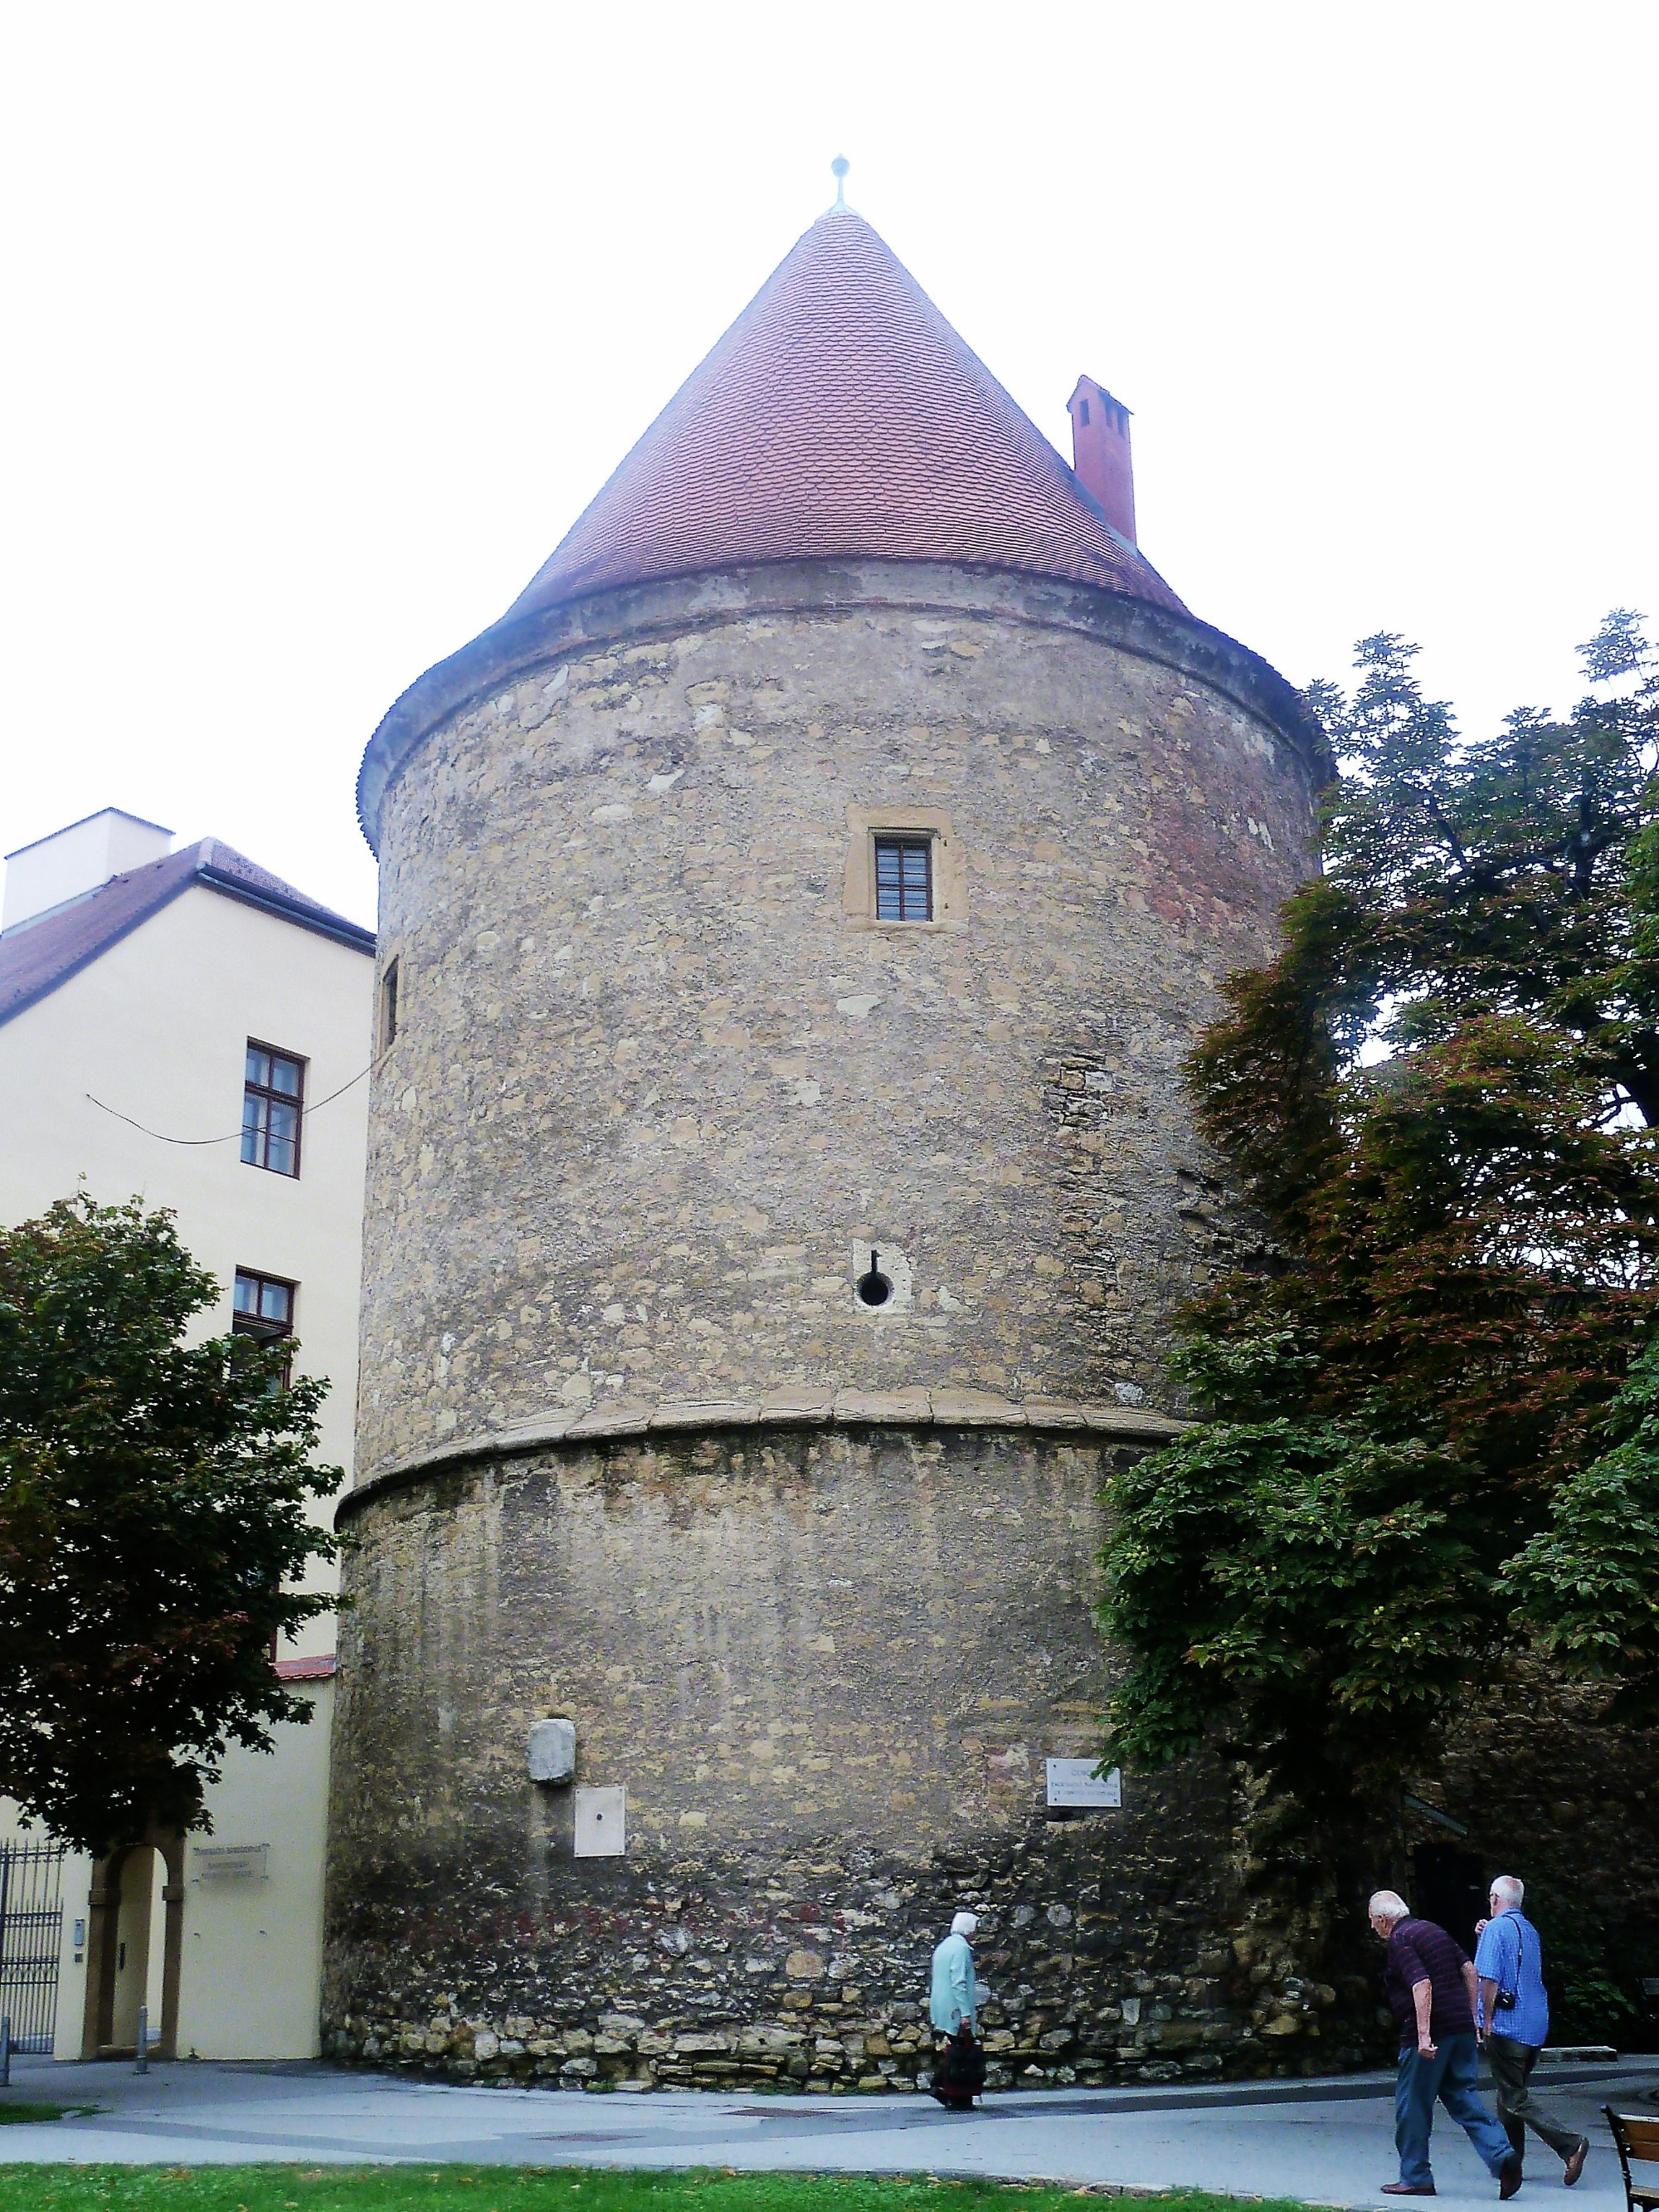 City Walls Tower